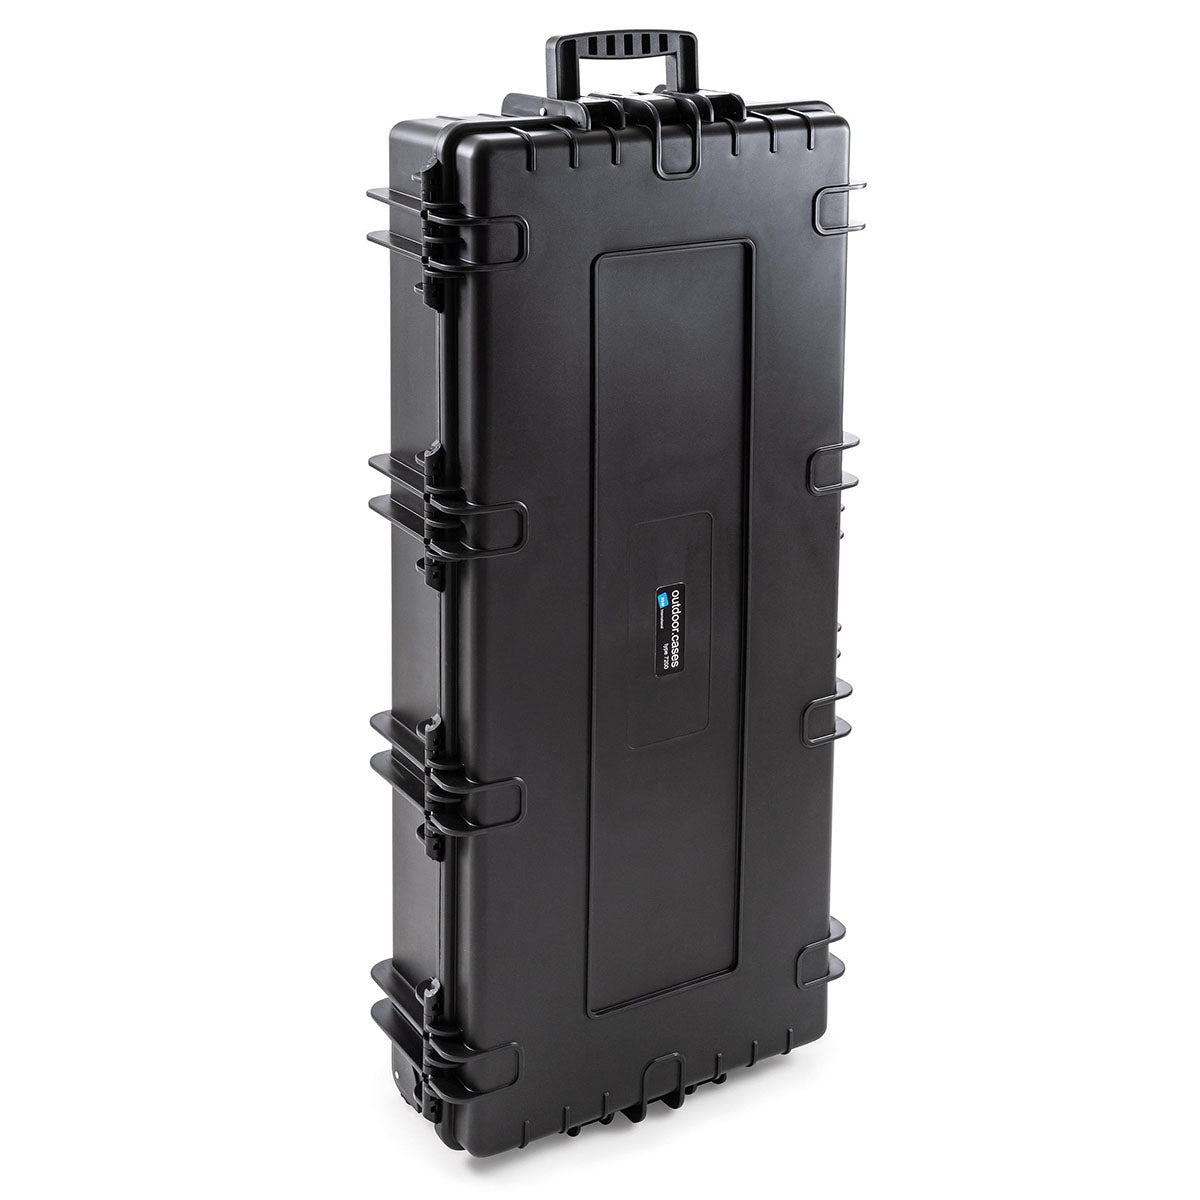 B&W Waterproof Case - Type 7200 Black Outdoor Case (No Foam)